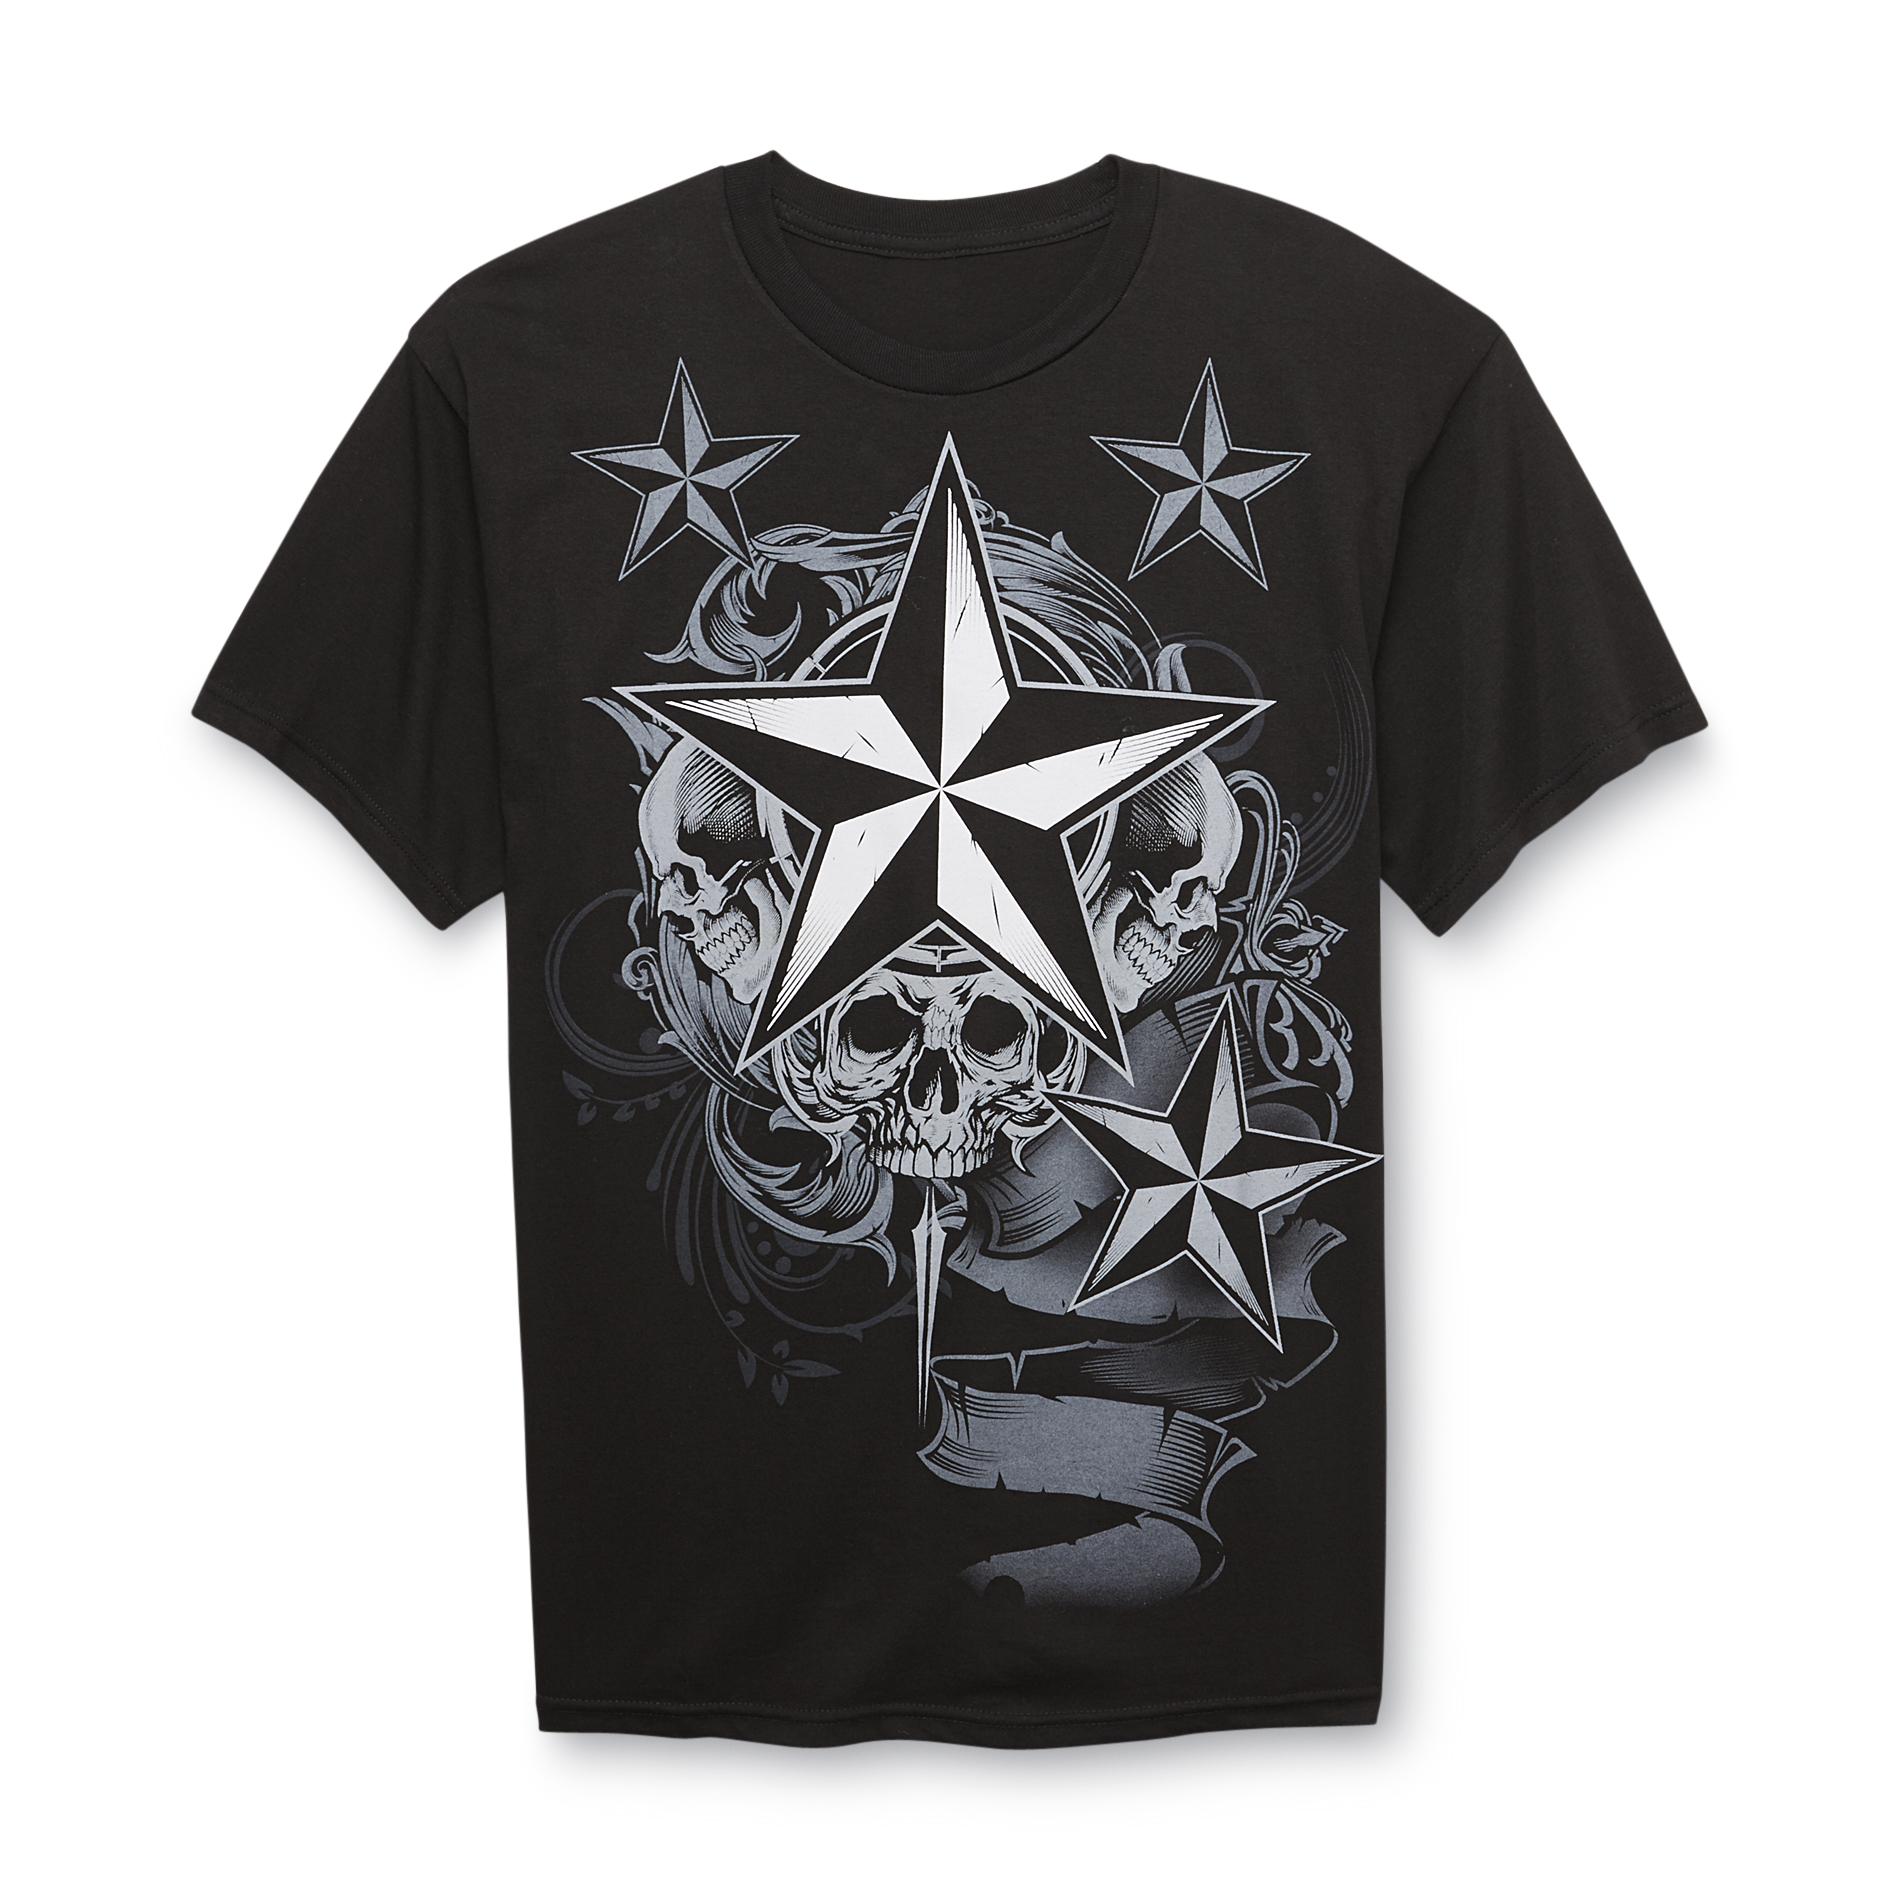 Screen Tee Market Brands Young Men's Graphic T-Shirt - Skulls & Stars